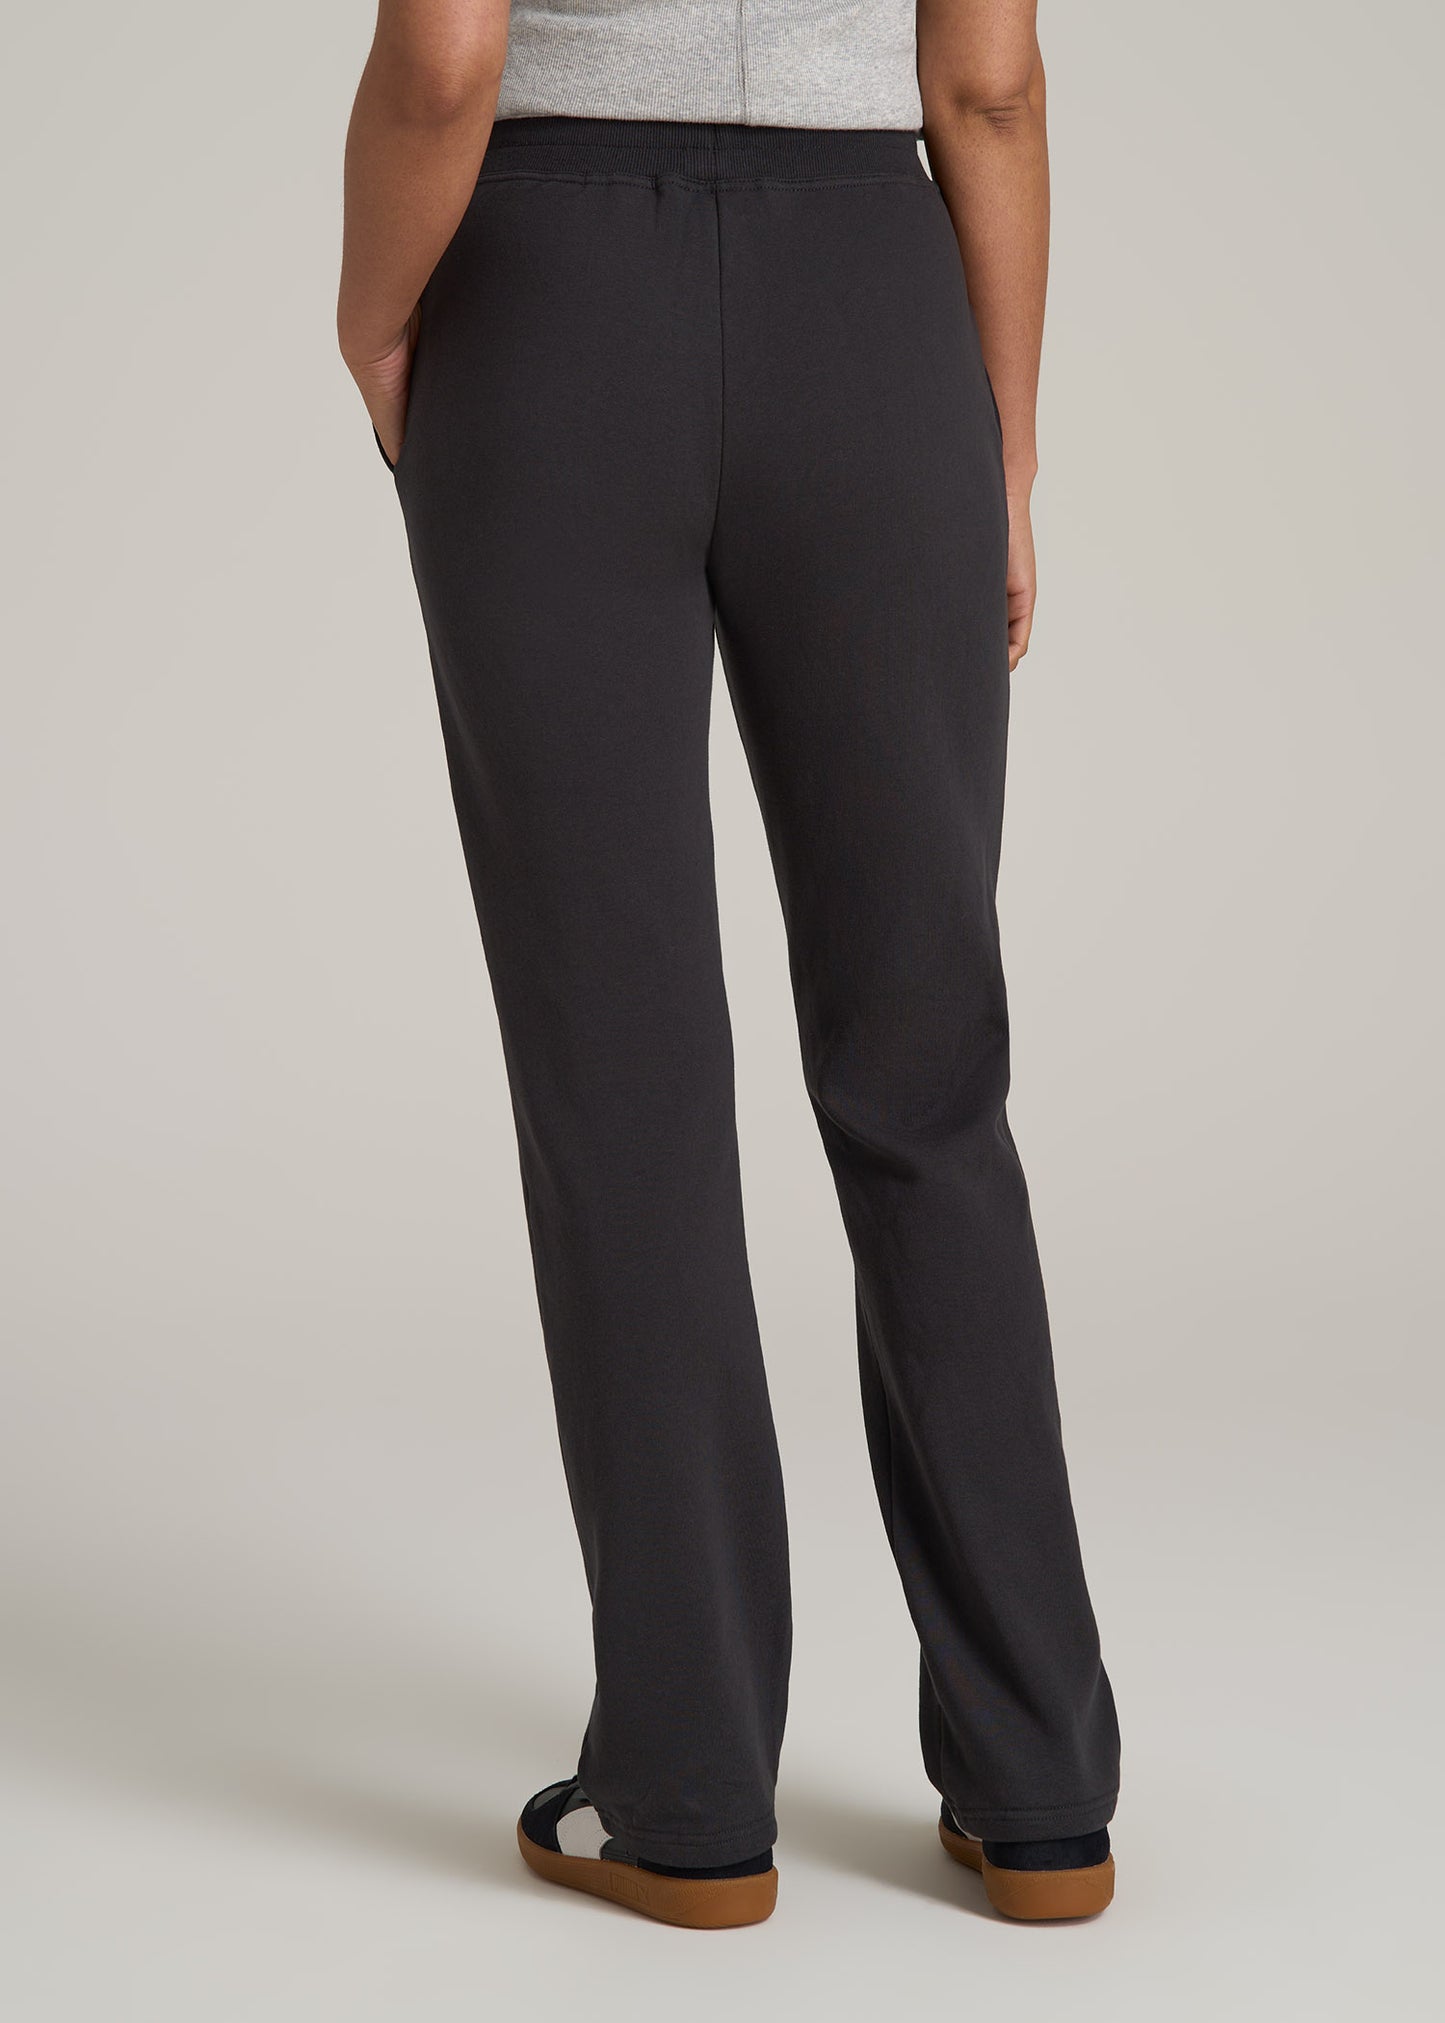 Wearever Fleece Open-Bottom Sweatpants for Tall Women in Graphite Black